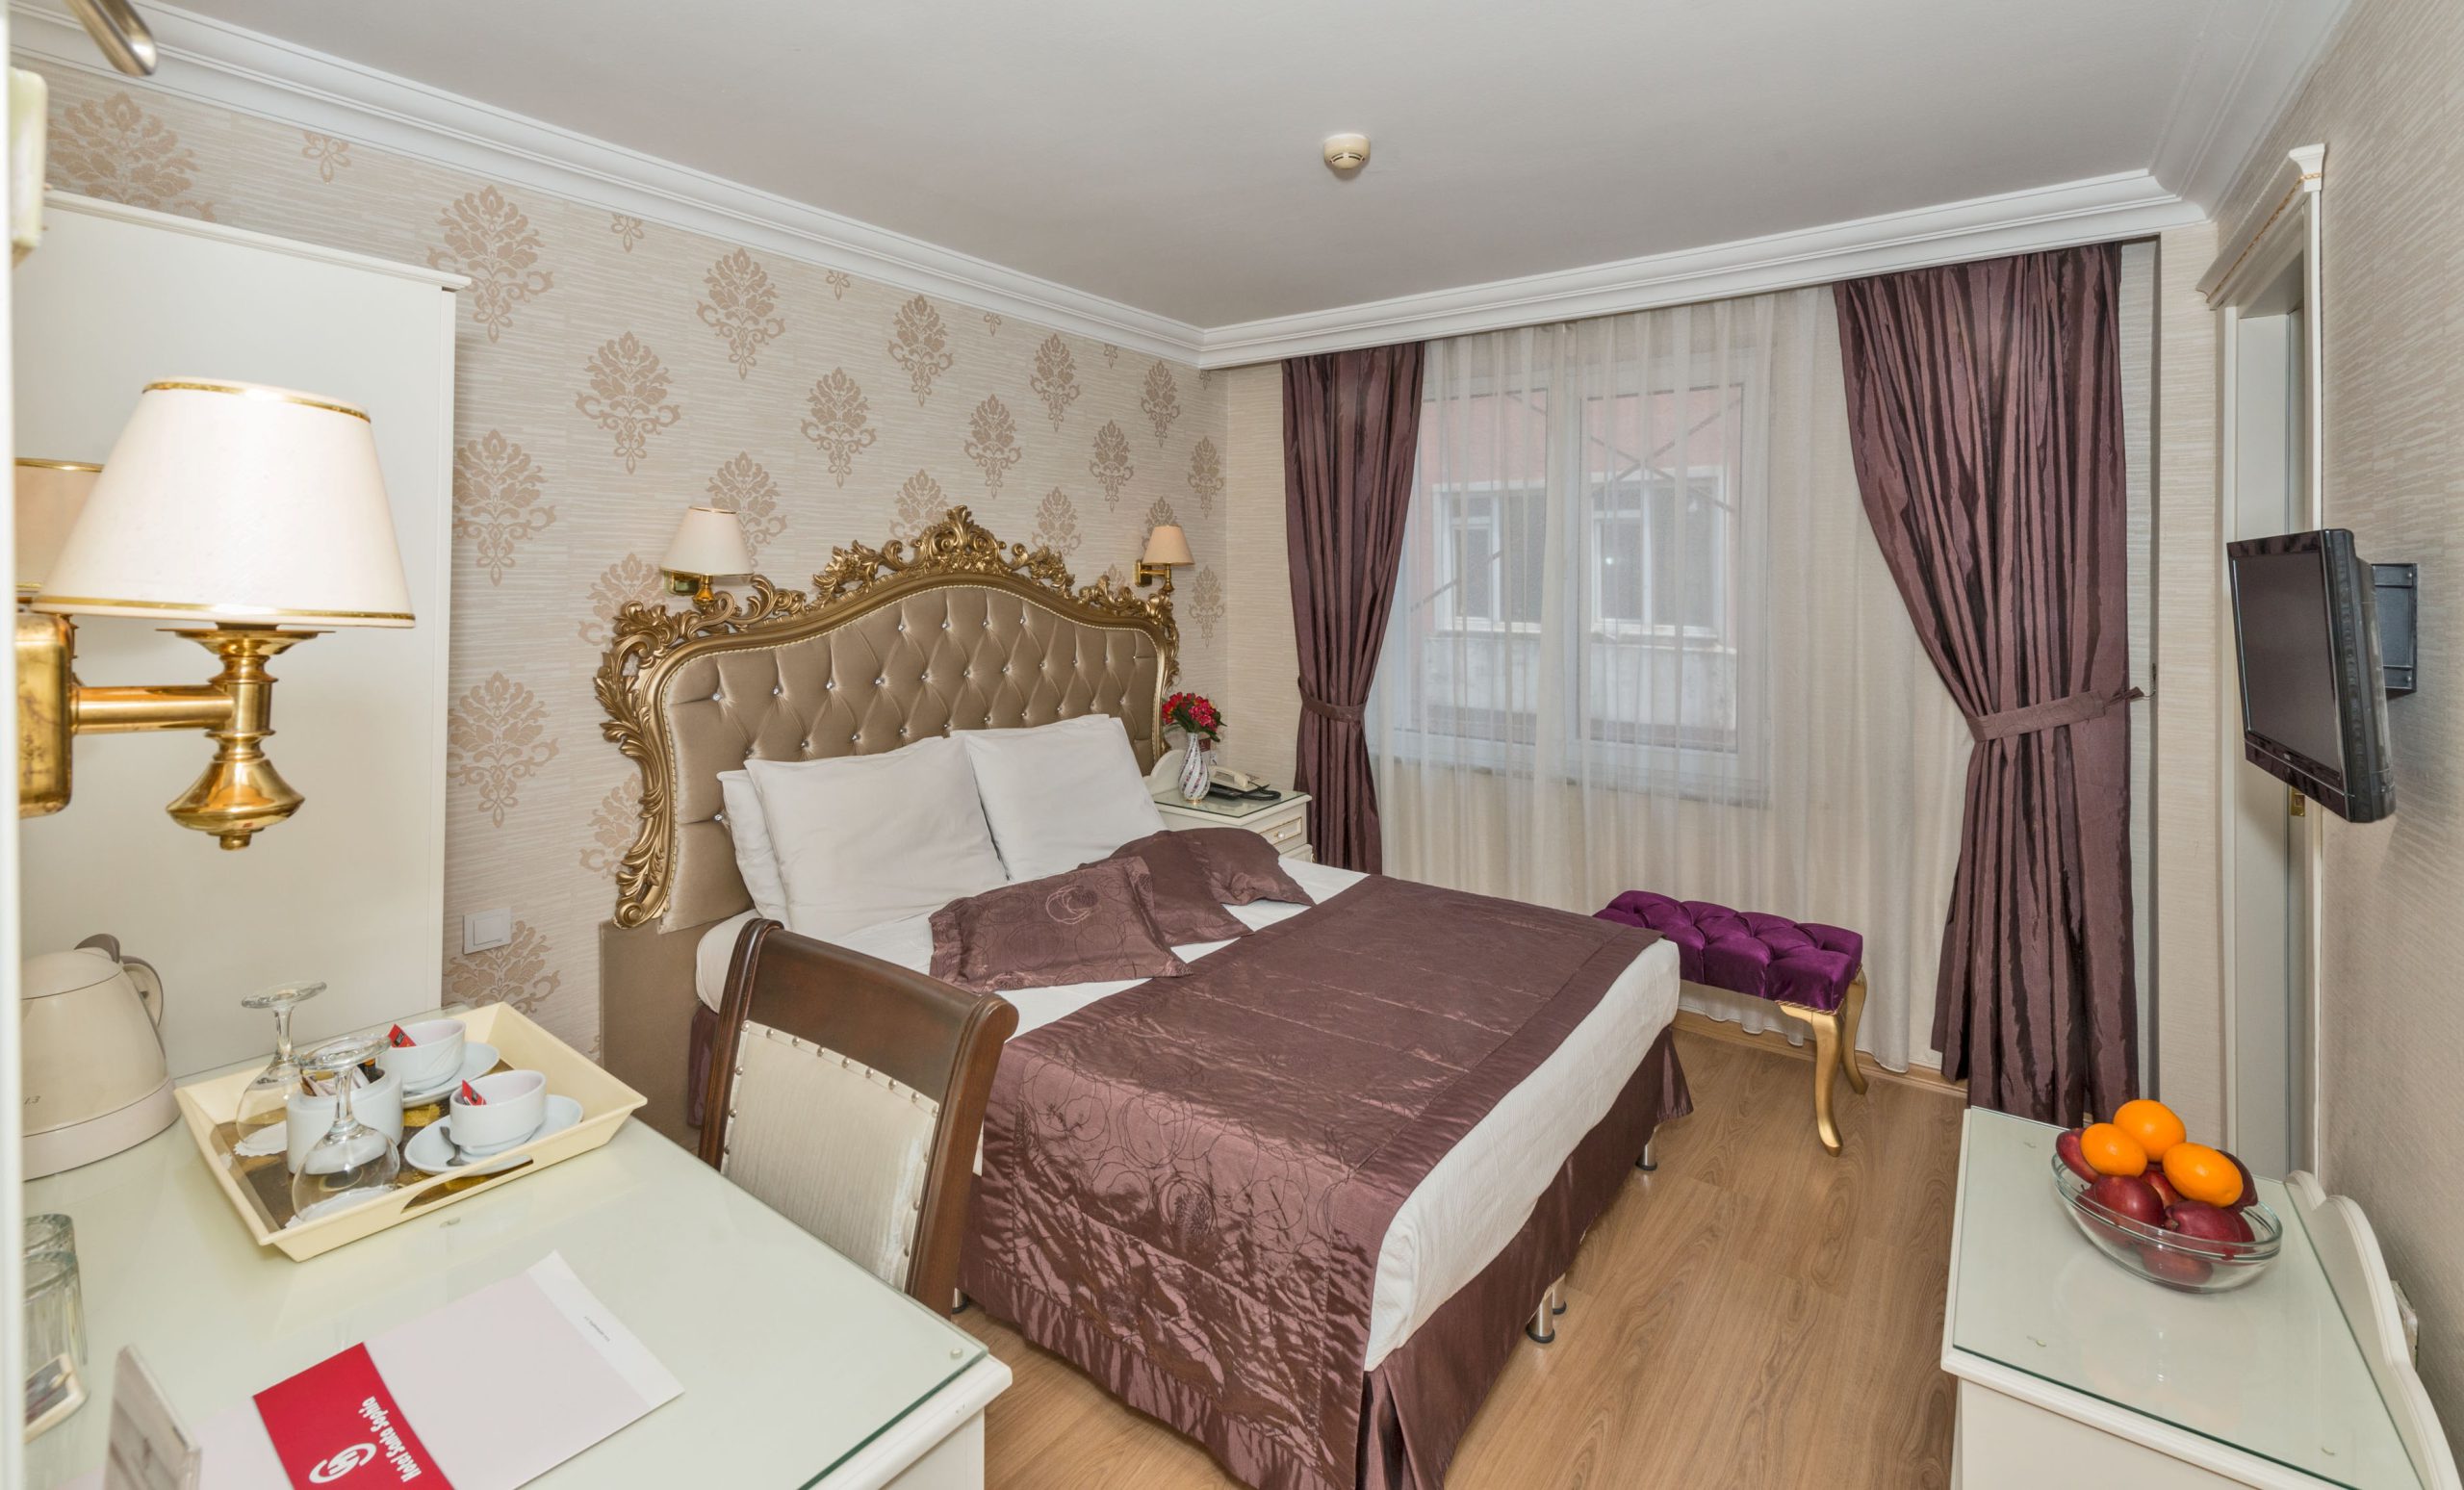 Santa sophia hotel istanbul sultanahmet economy room